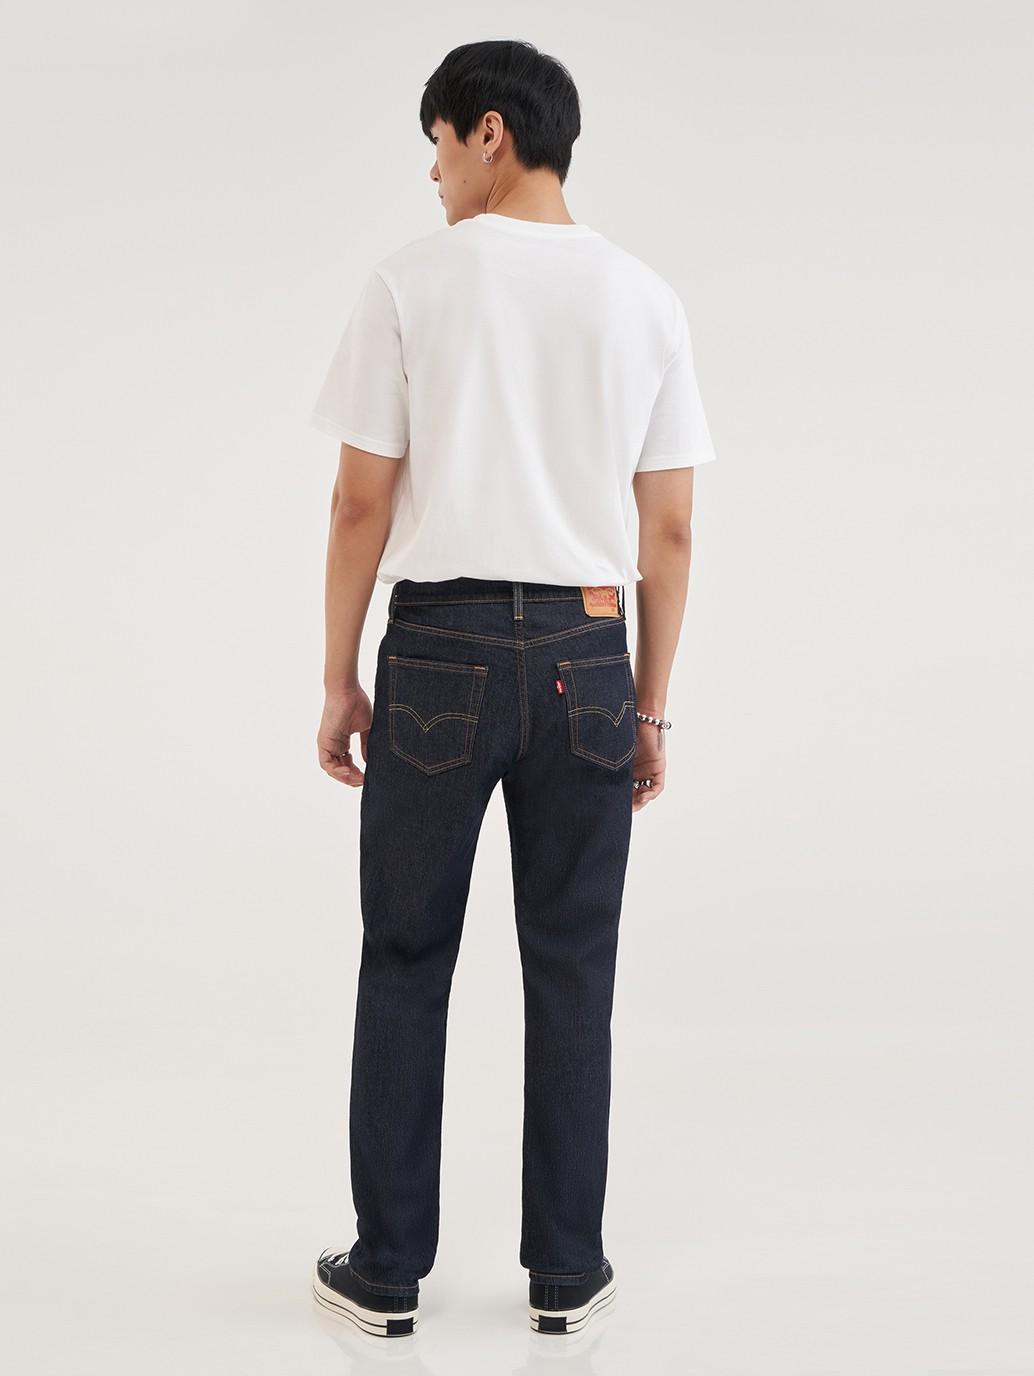 Buy Levi's® Men's 511™ Slim Jeans| Levi’s Official Online Store PH